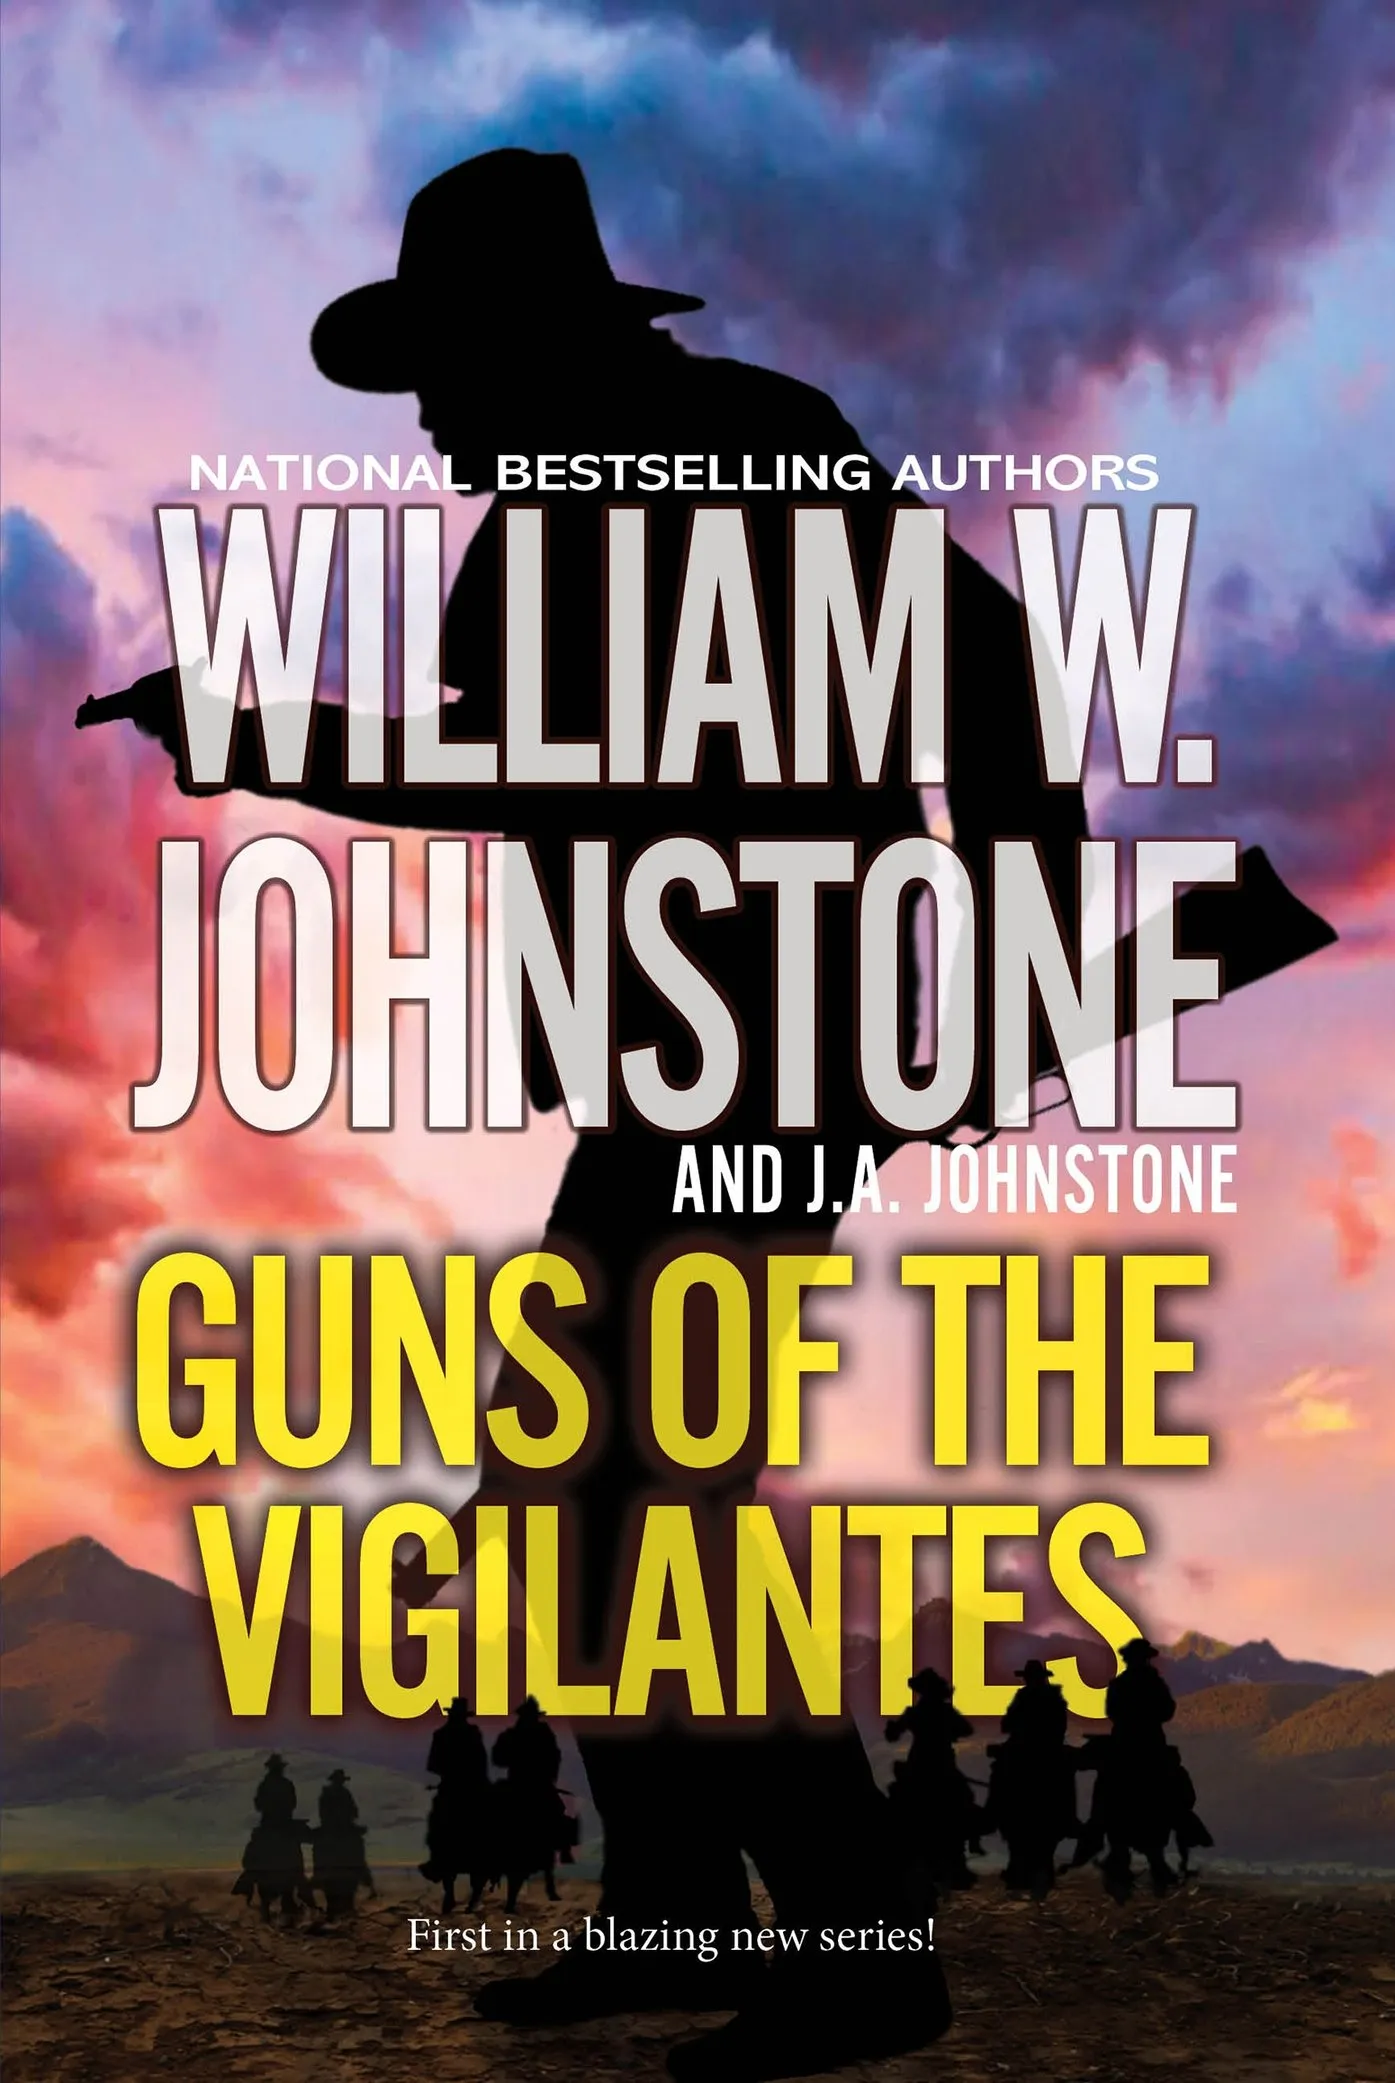 Guns of the Vigilantes (Guns of the Vigilantes #1)